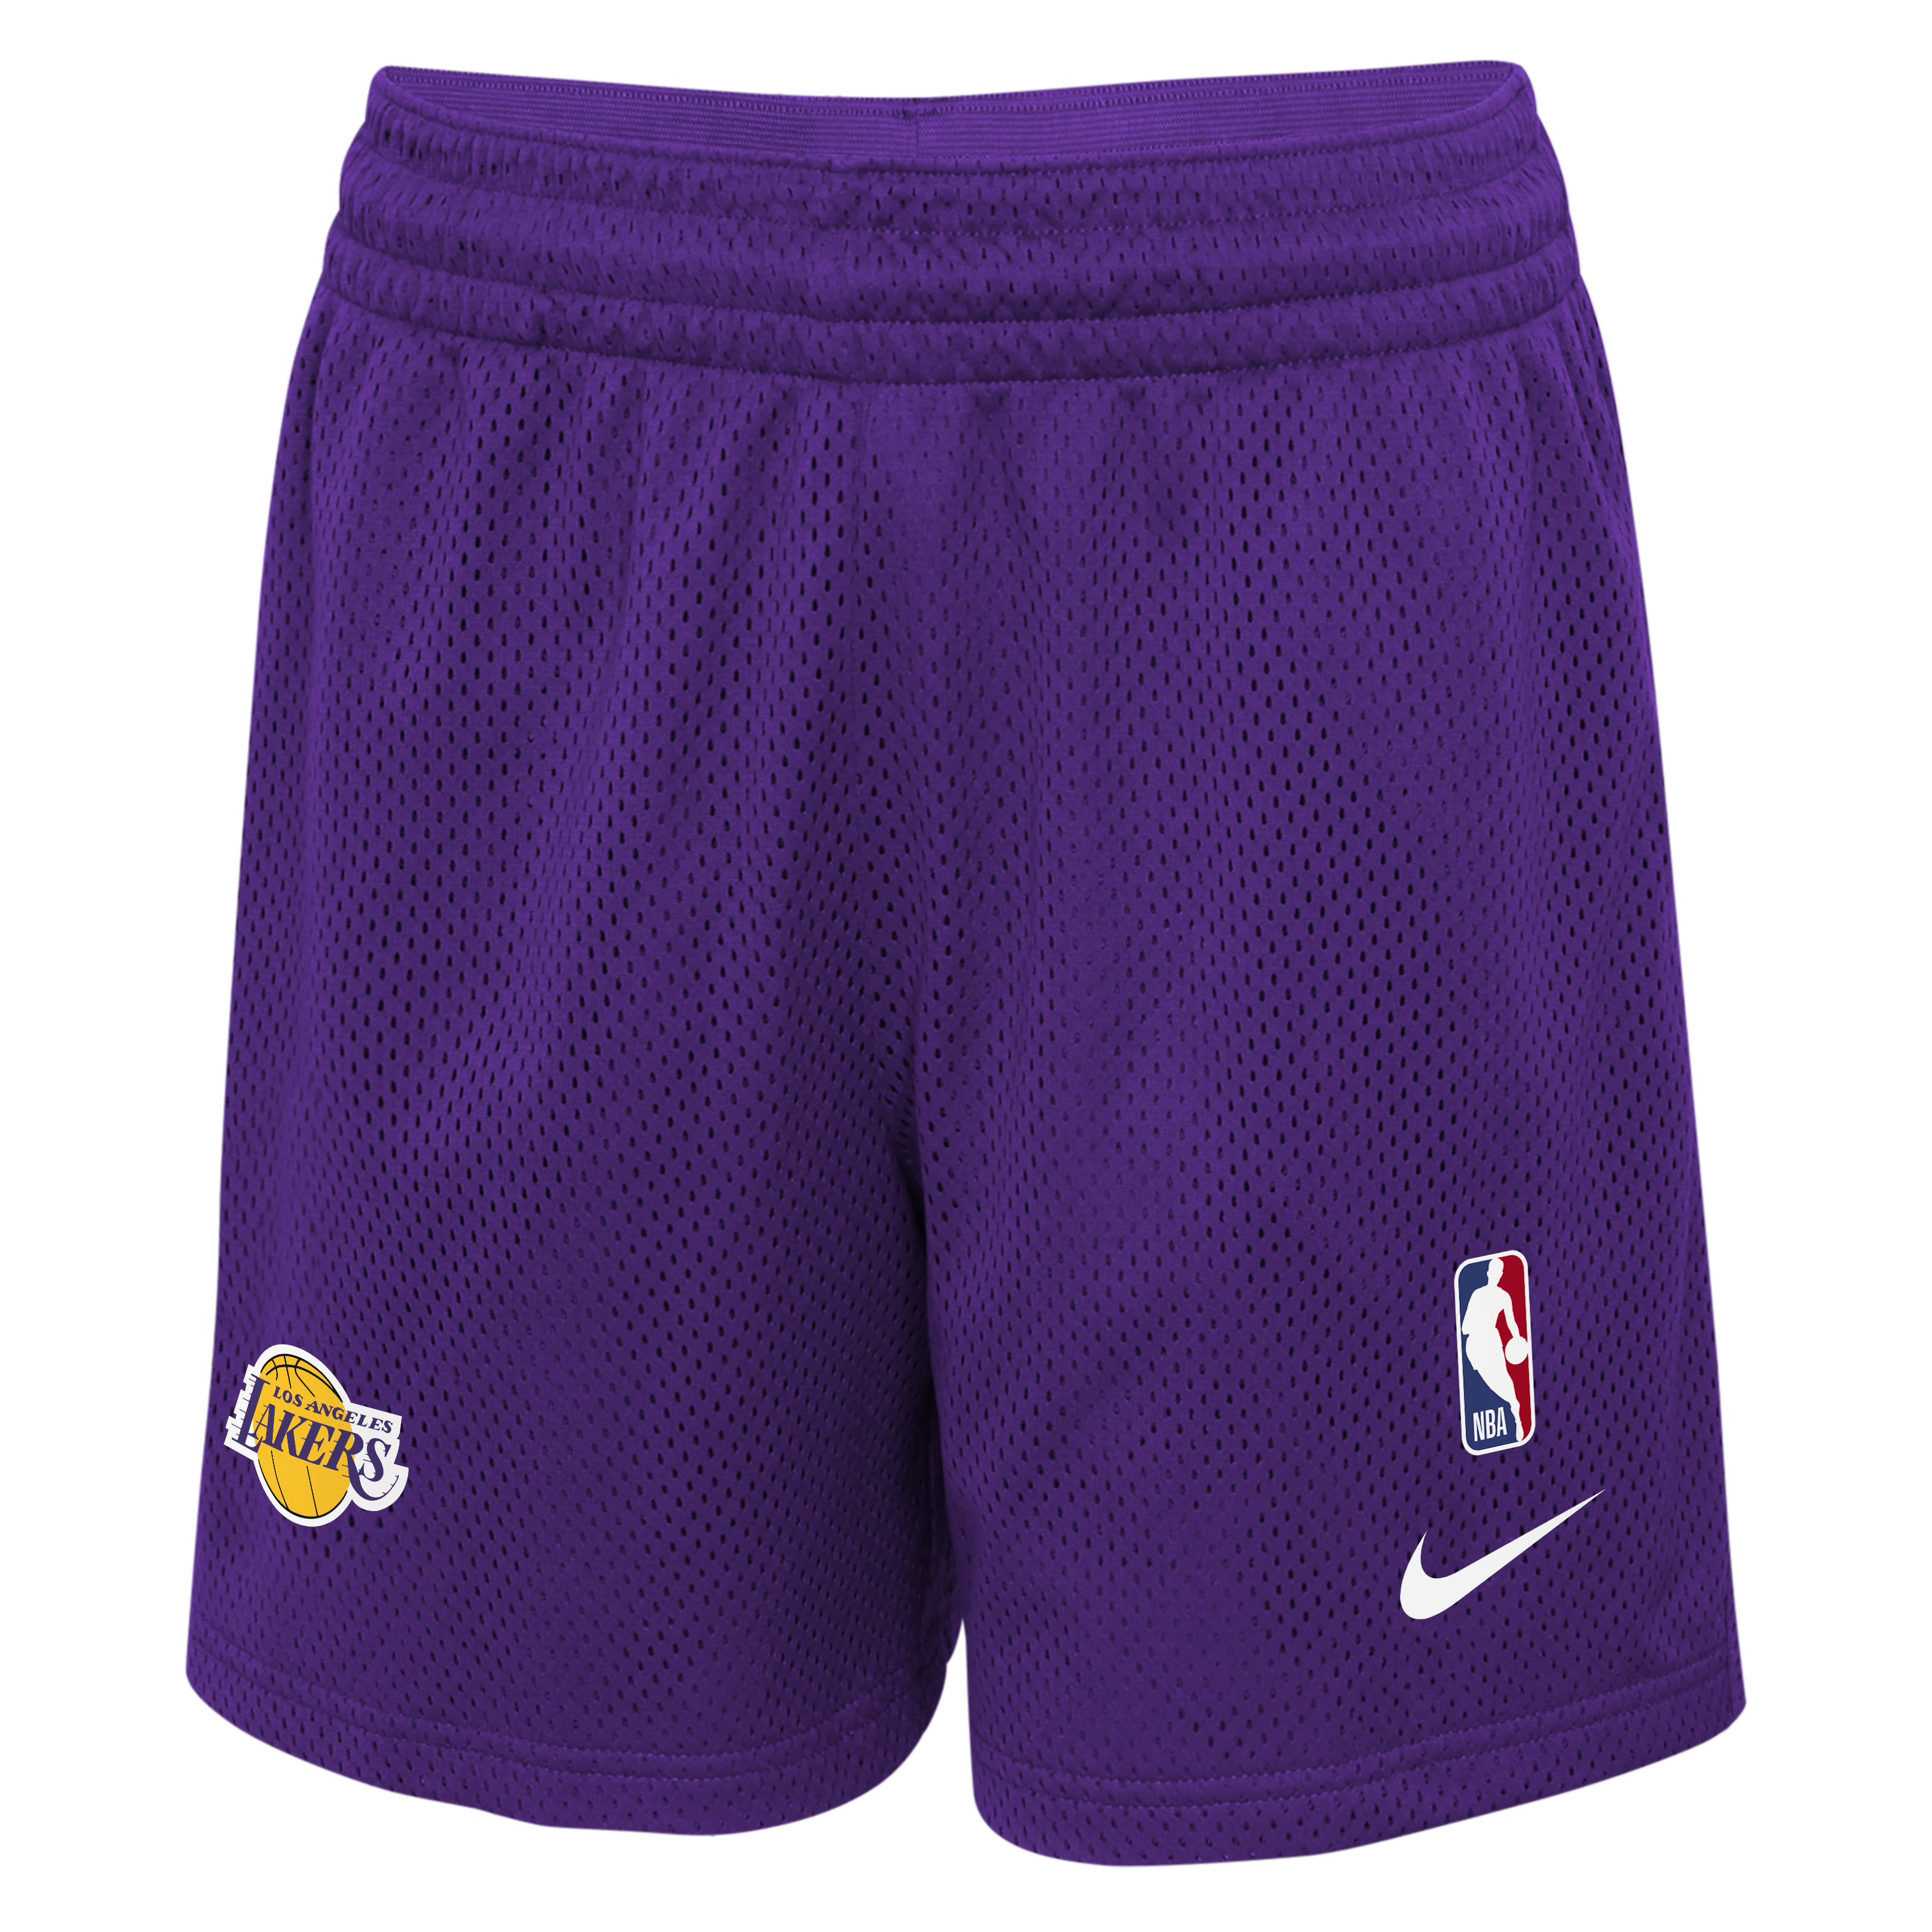 Los Angeles Lakers Starting 5 Men's Nike Dri-FIT NBA Shorts.